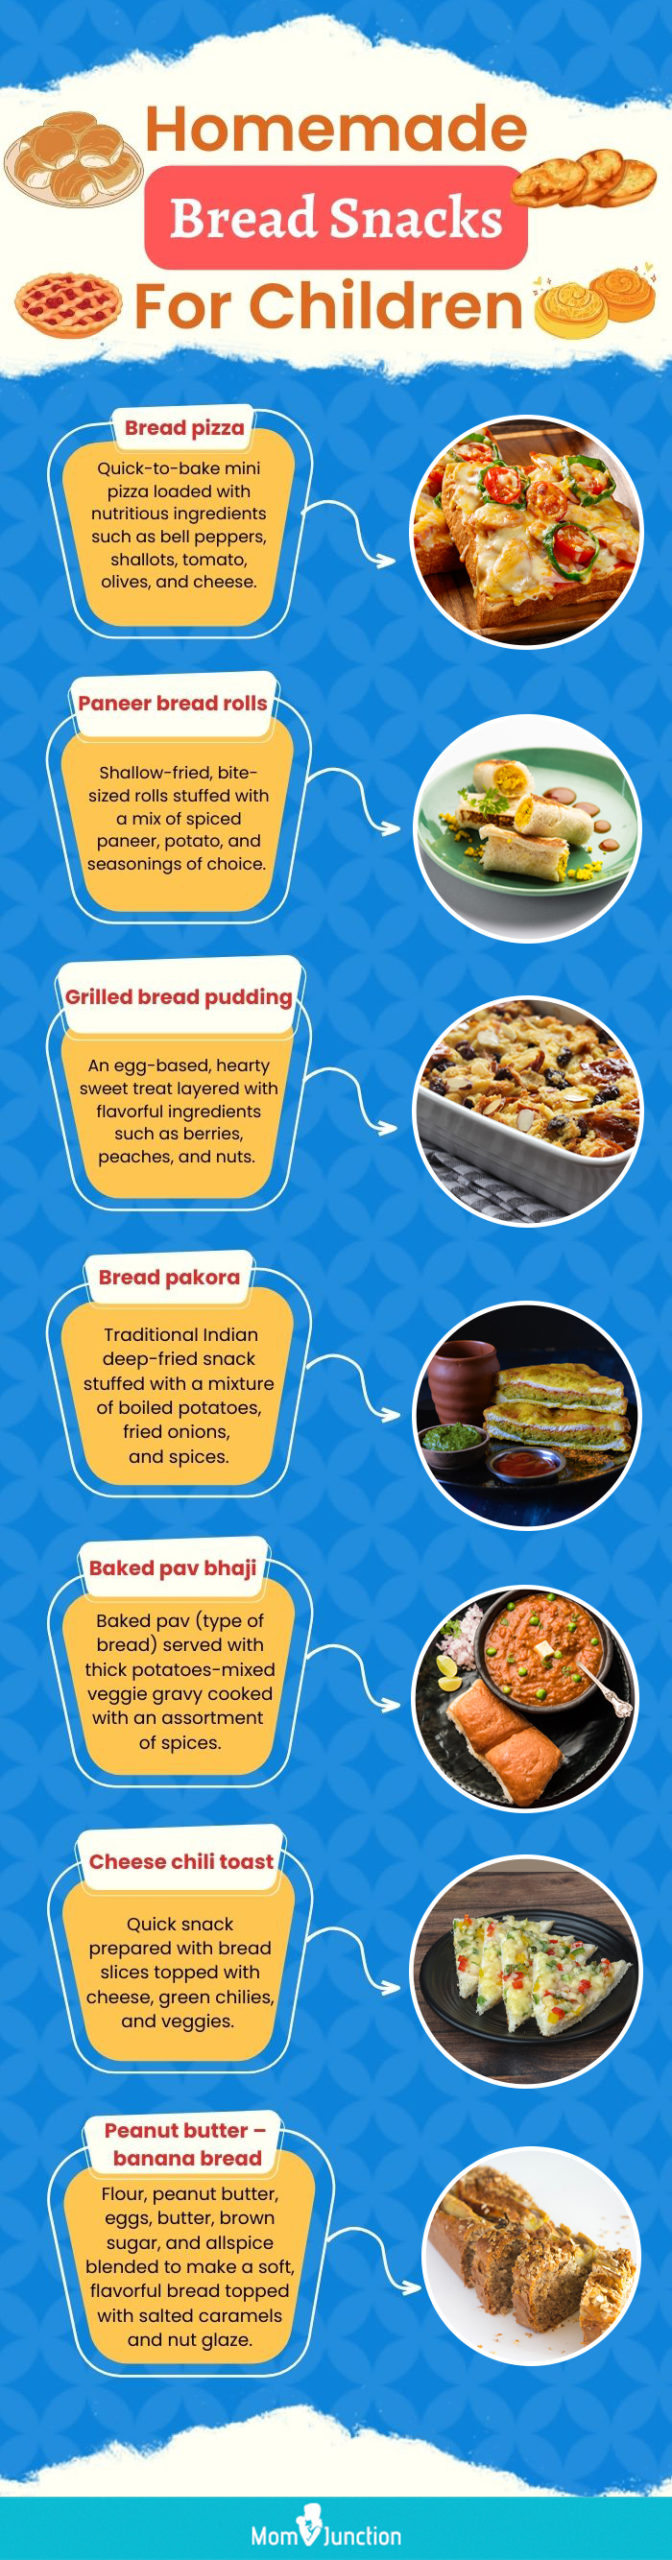 homemade bread snacks for children (infographic)